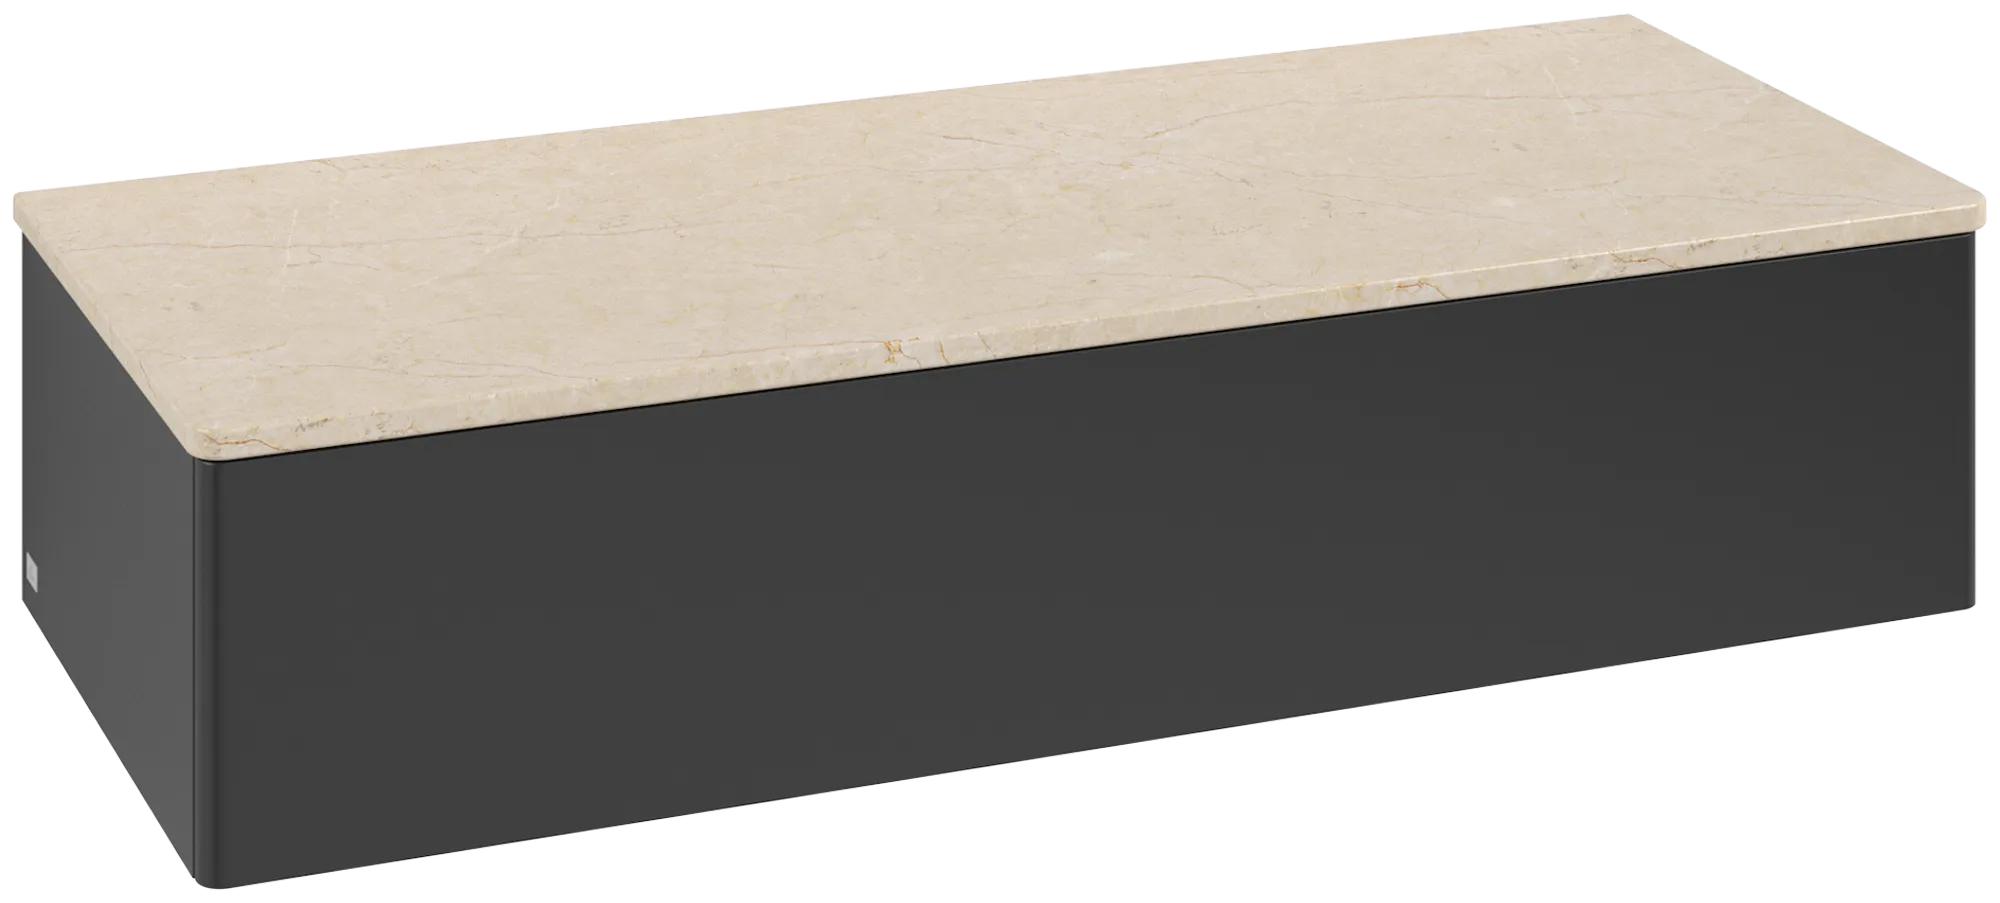 Bild von VILLEROY BOCH Antao Sideboard, 1 Auszug, 1200 x 268 x 500 mm, Front ohne Struktur, Black Matt Lacquer / Botticino #K41003PD